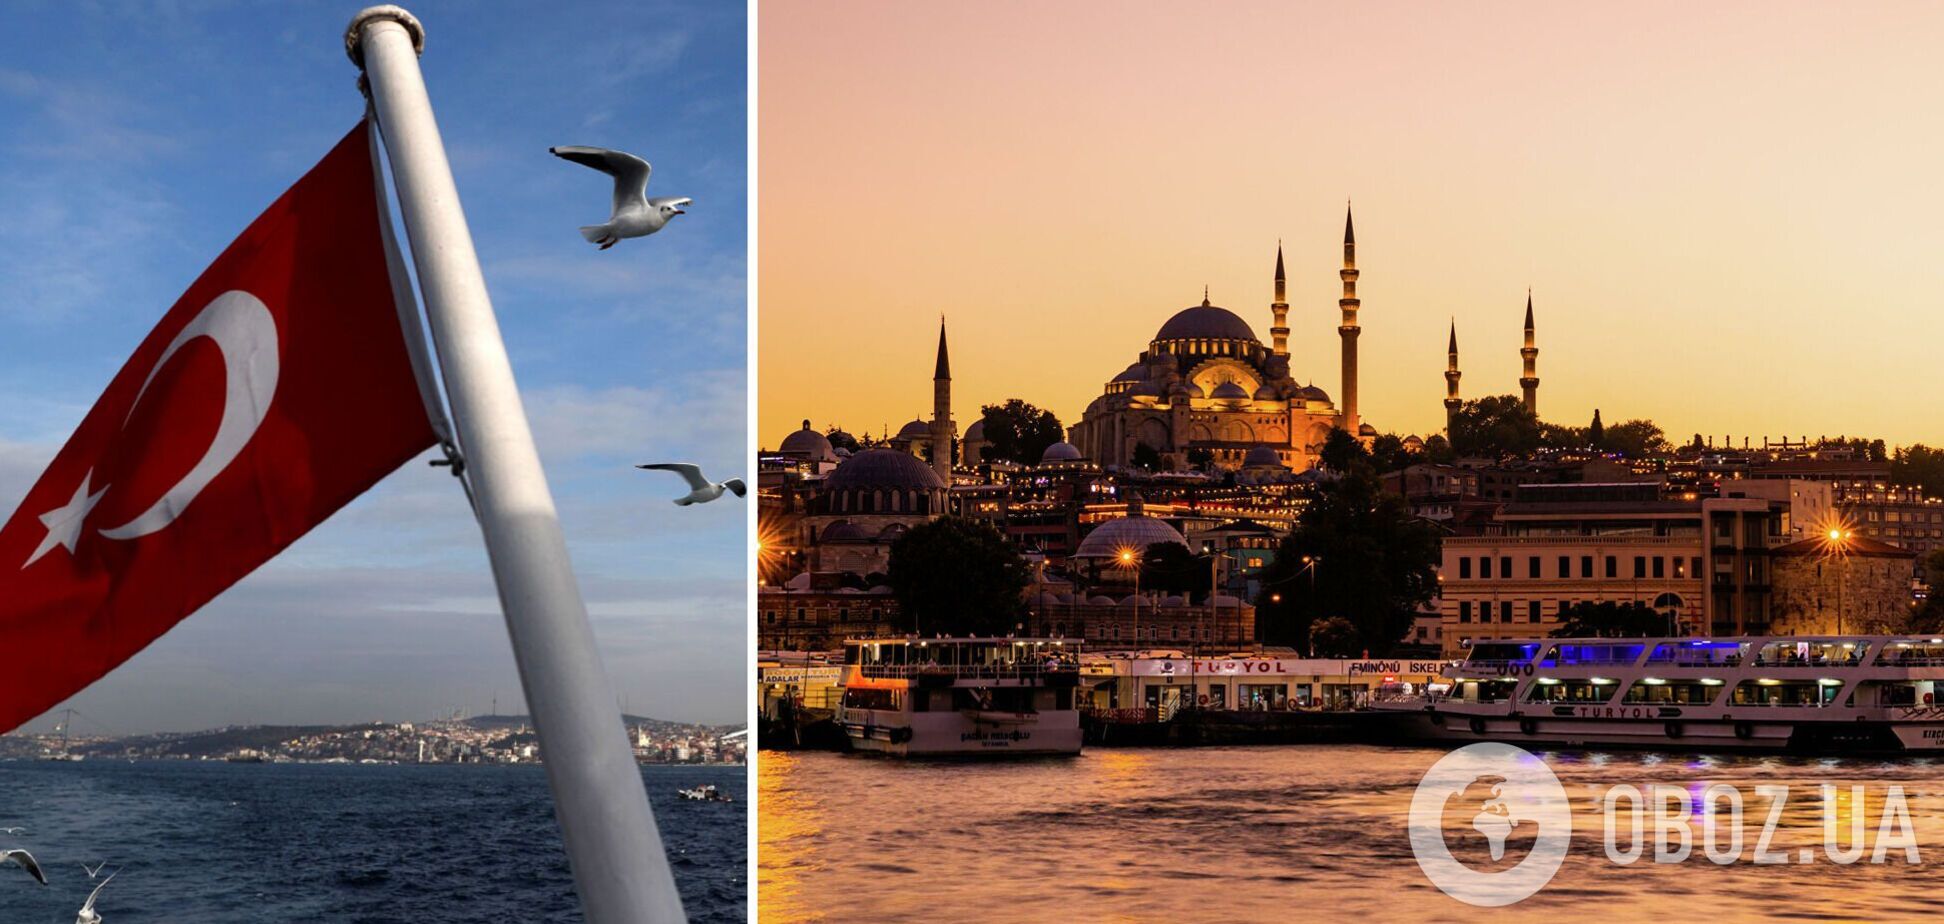 Изменятся ли цены на отдых в Турции после запрета полетов из РФ: эксперты дали ответ